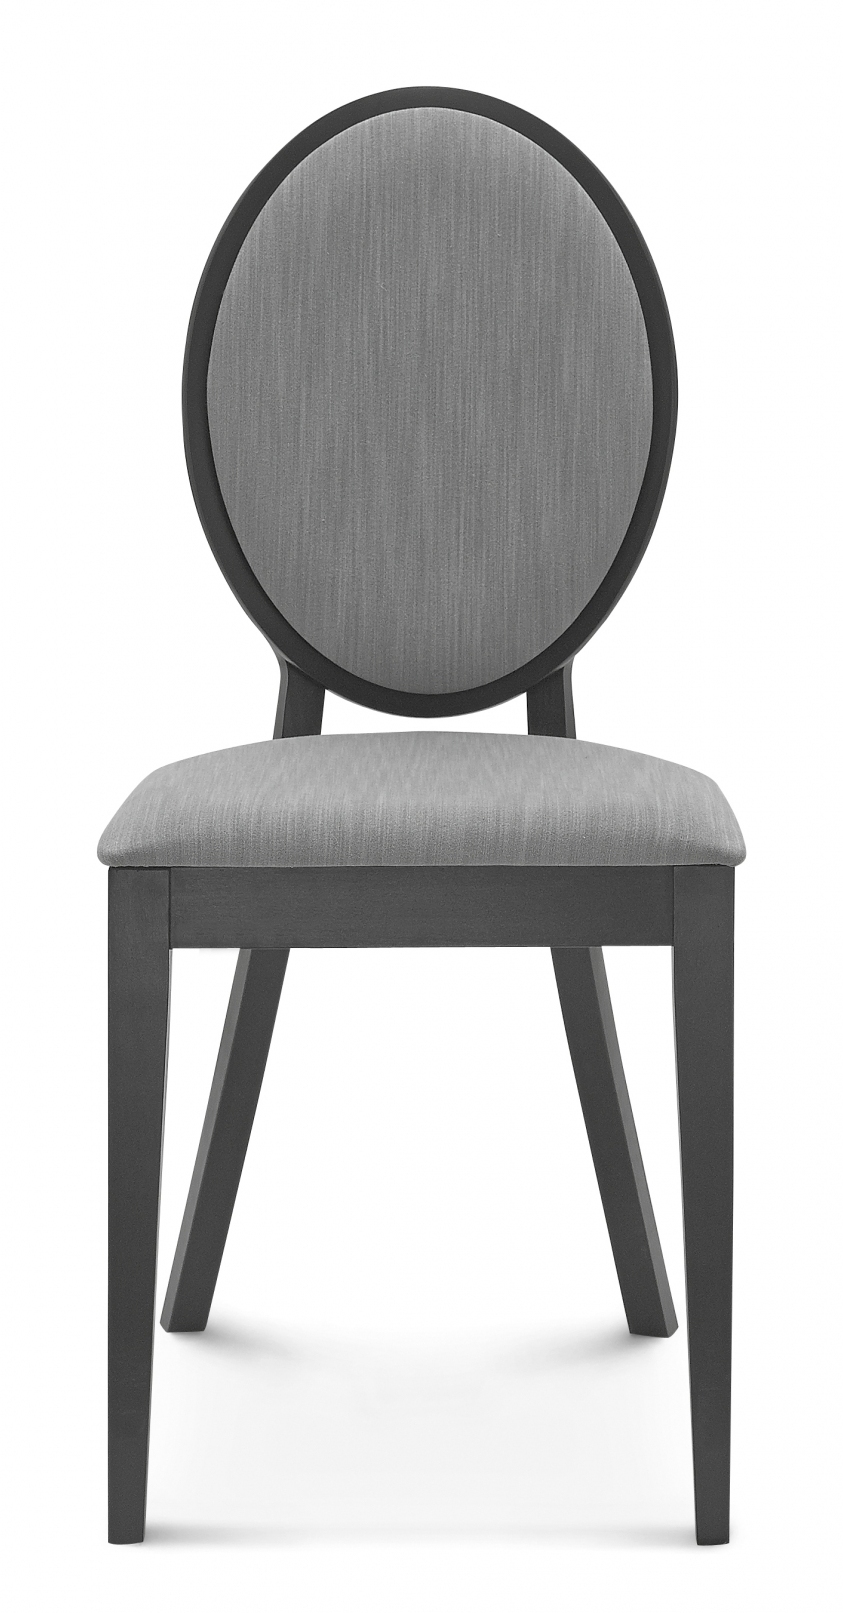 Krzesło drewniane tapicerowane Fameg A-0253 DIANA - R